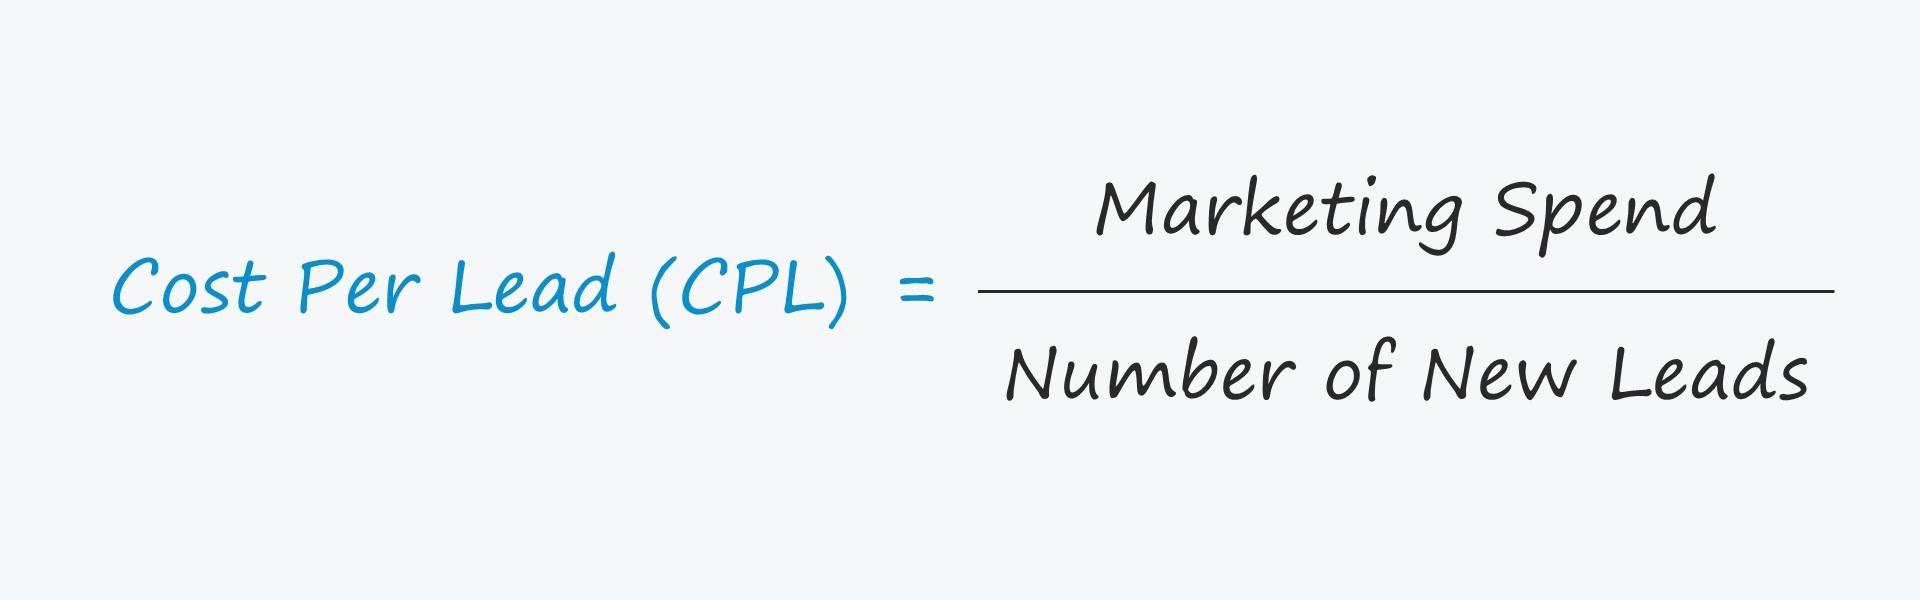 Costo por cliente potencial (CPL) | Fórmula + Calculadora